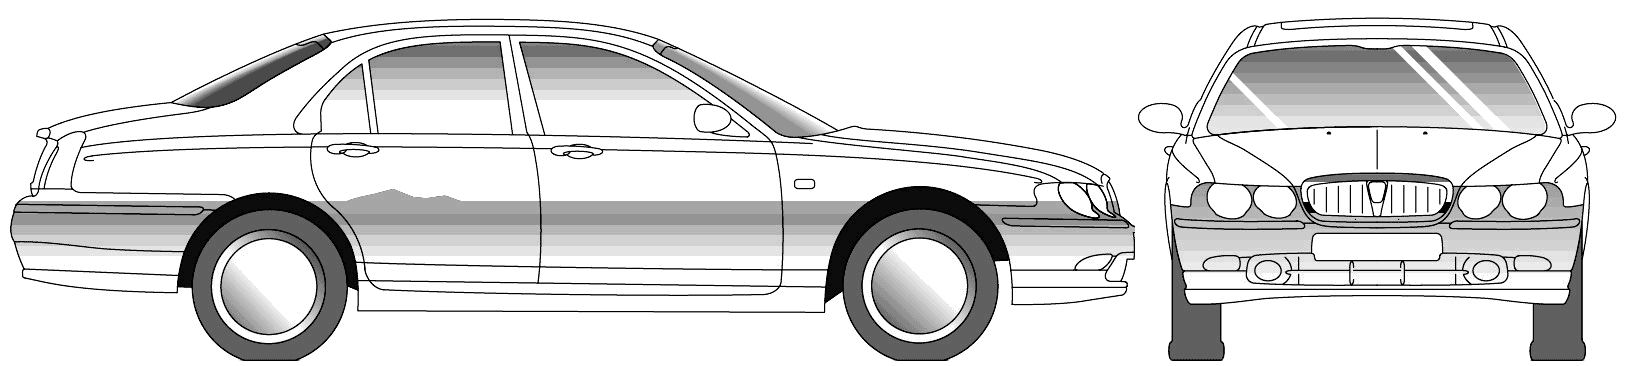 Car Rover 75 2001